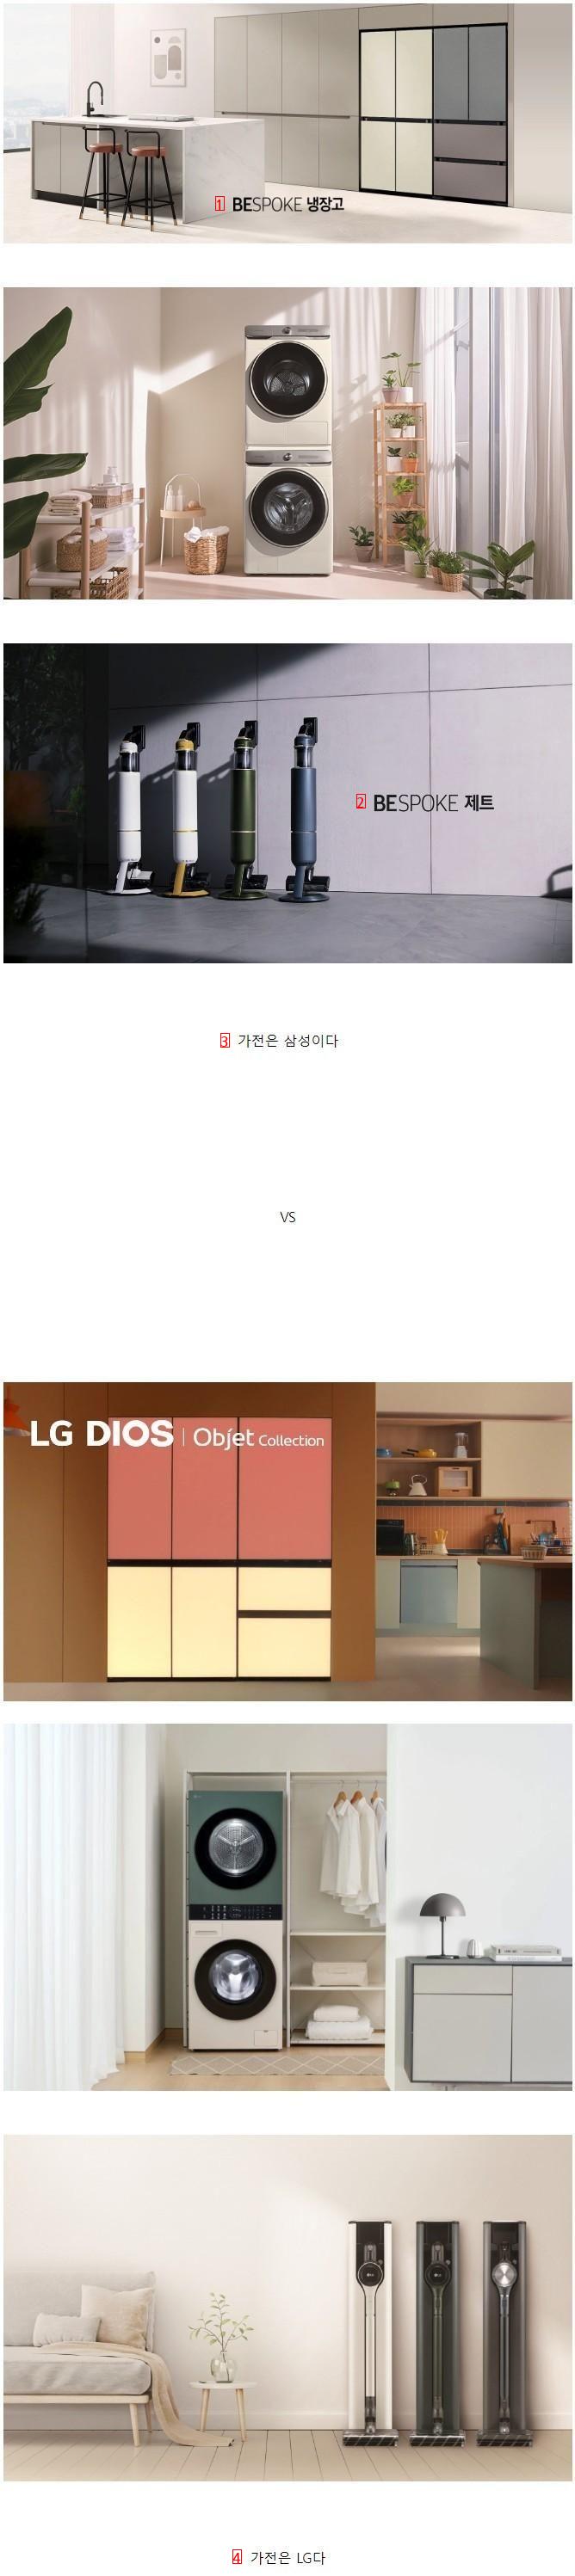 의견 갈린다는 가전은 삼성 vs LG